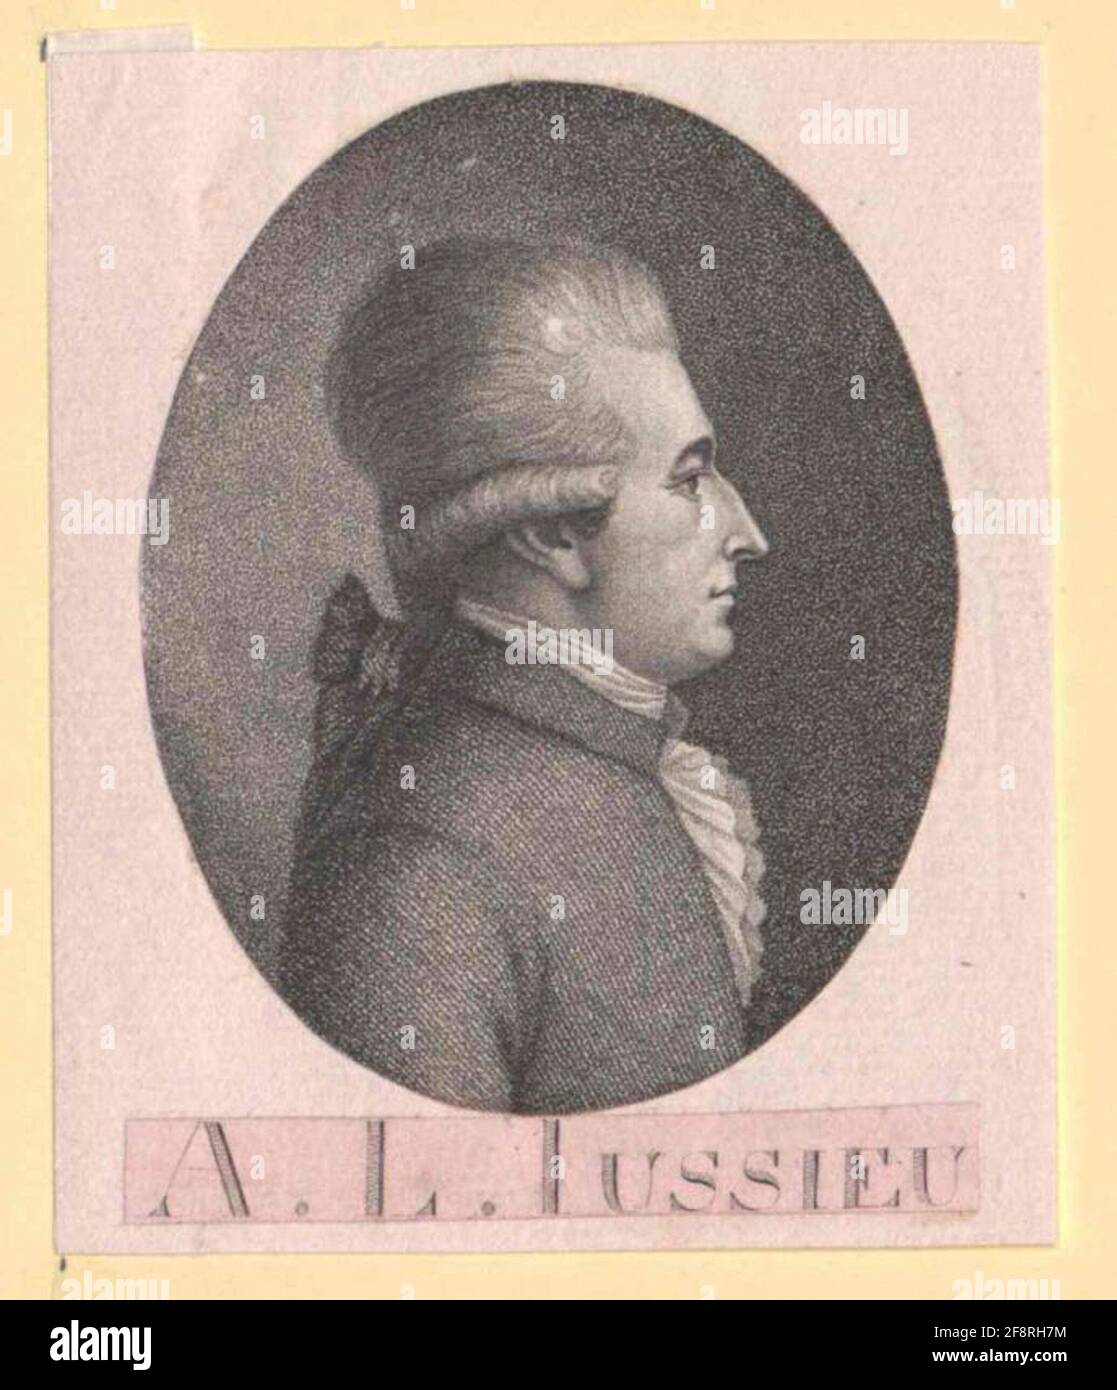 Jussieu, Antoine-Laurent de. Stockfoto